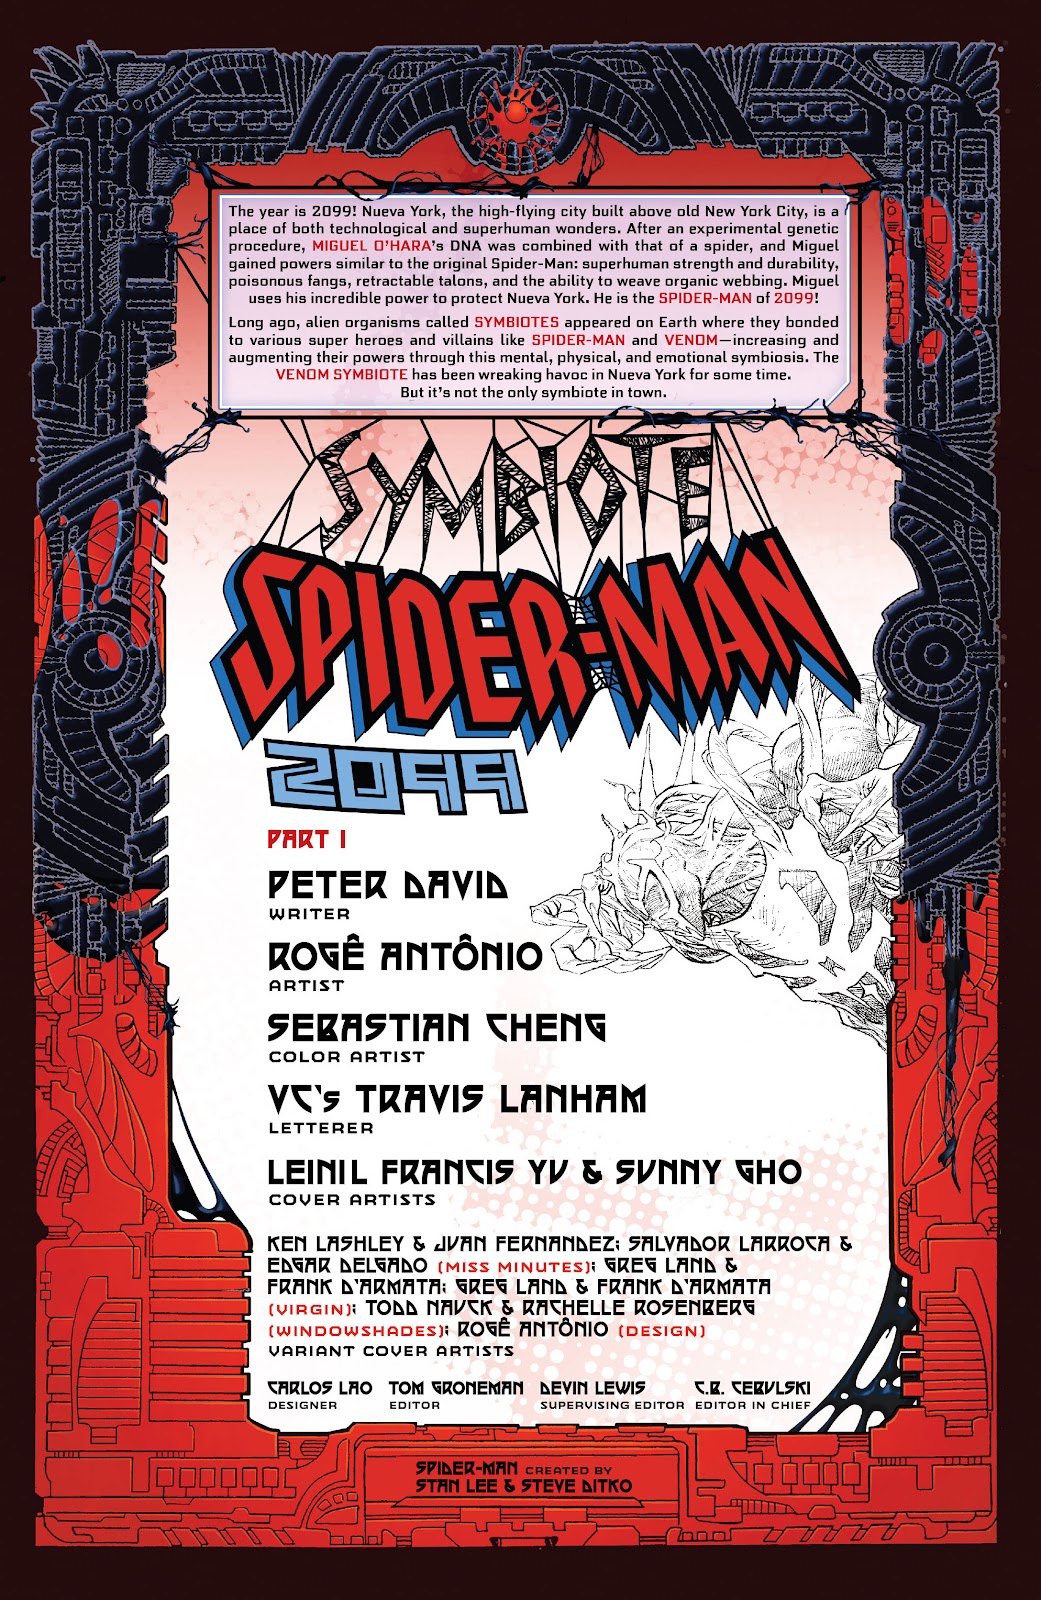 Symbiote Spider-Man 2099 issue 1 - Page 4